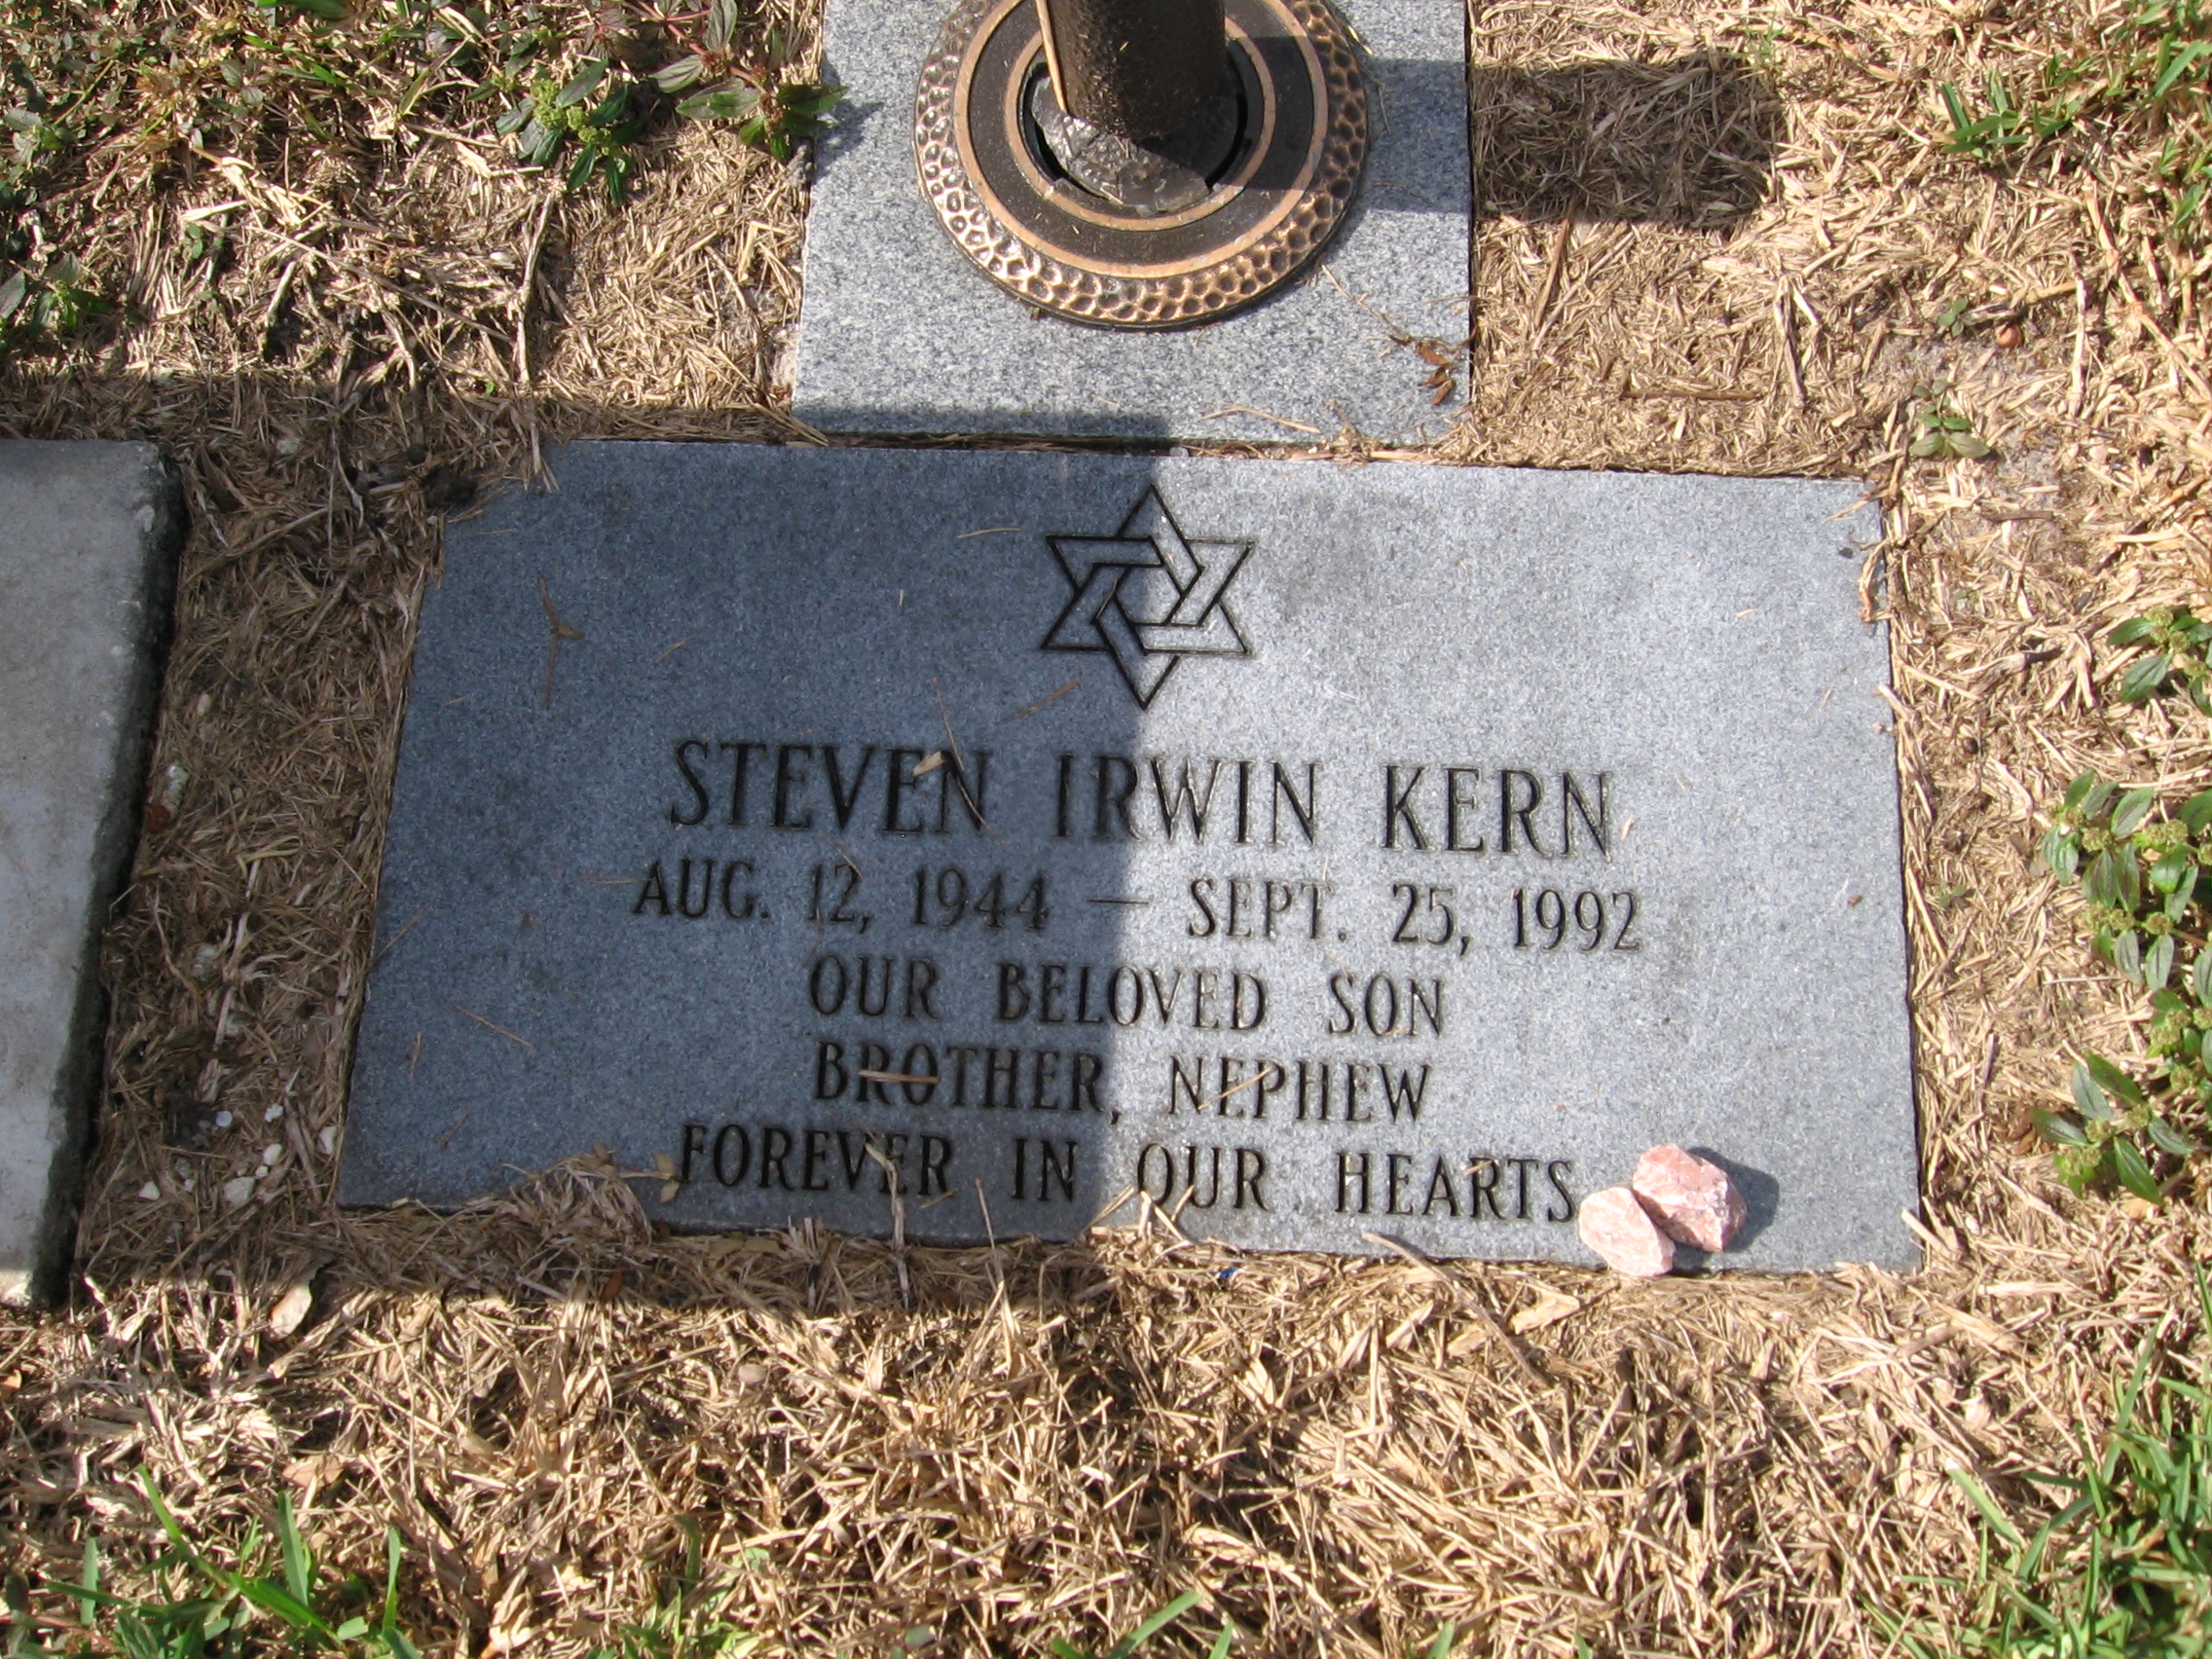 Steven Irwin Kern